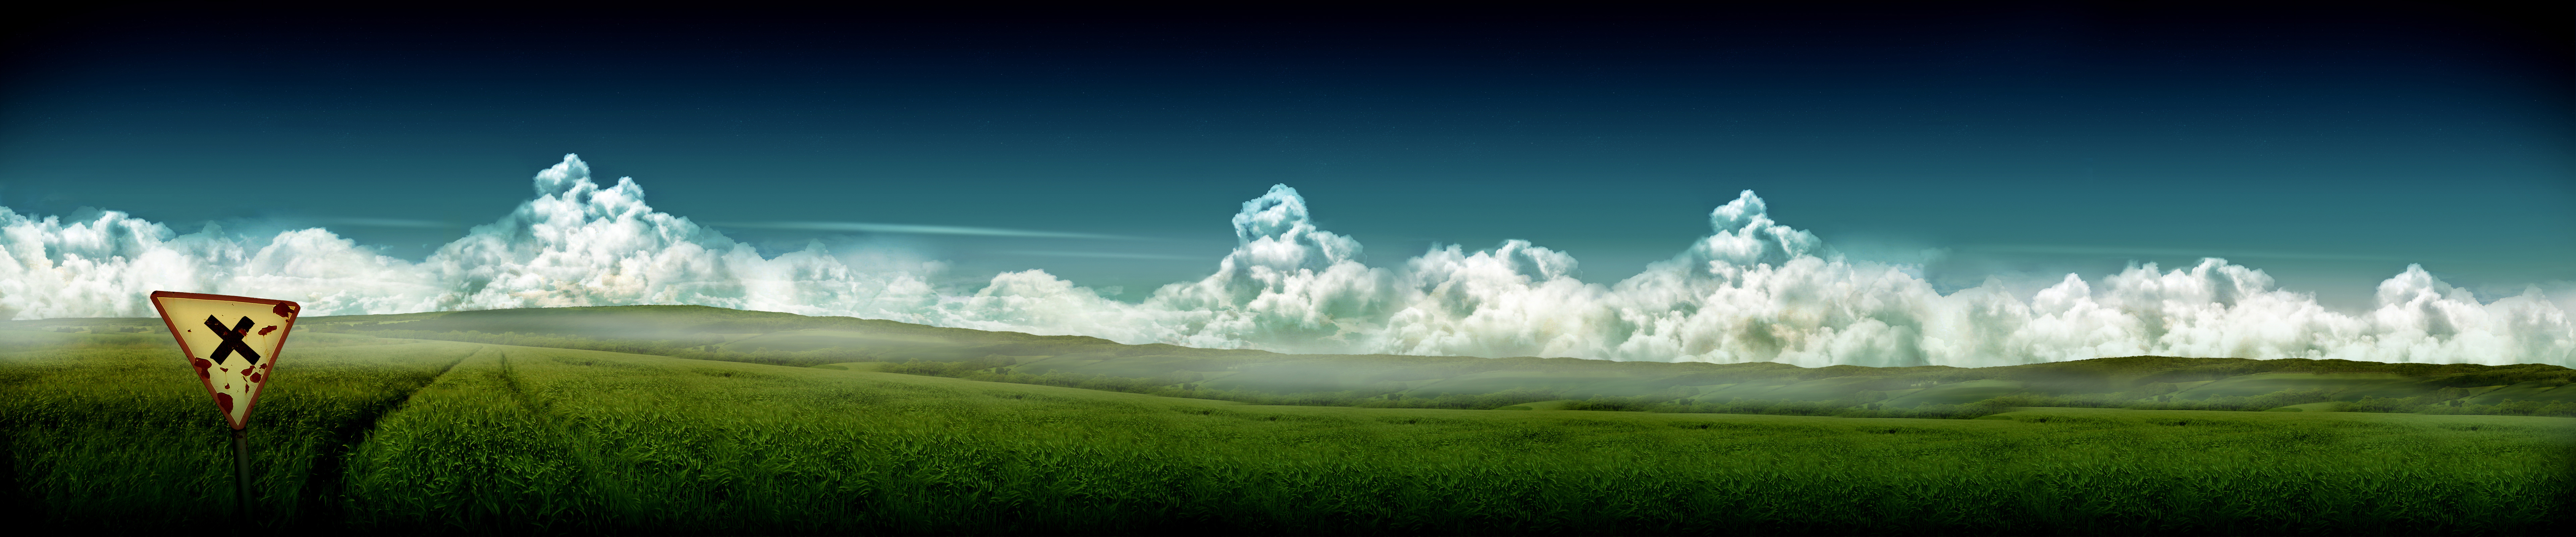 ホームゾーンの壁紙,空,雲,草原,自然,昼間